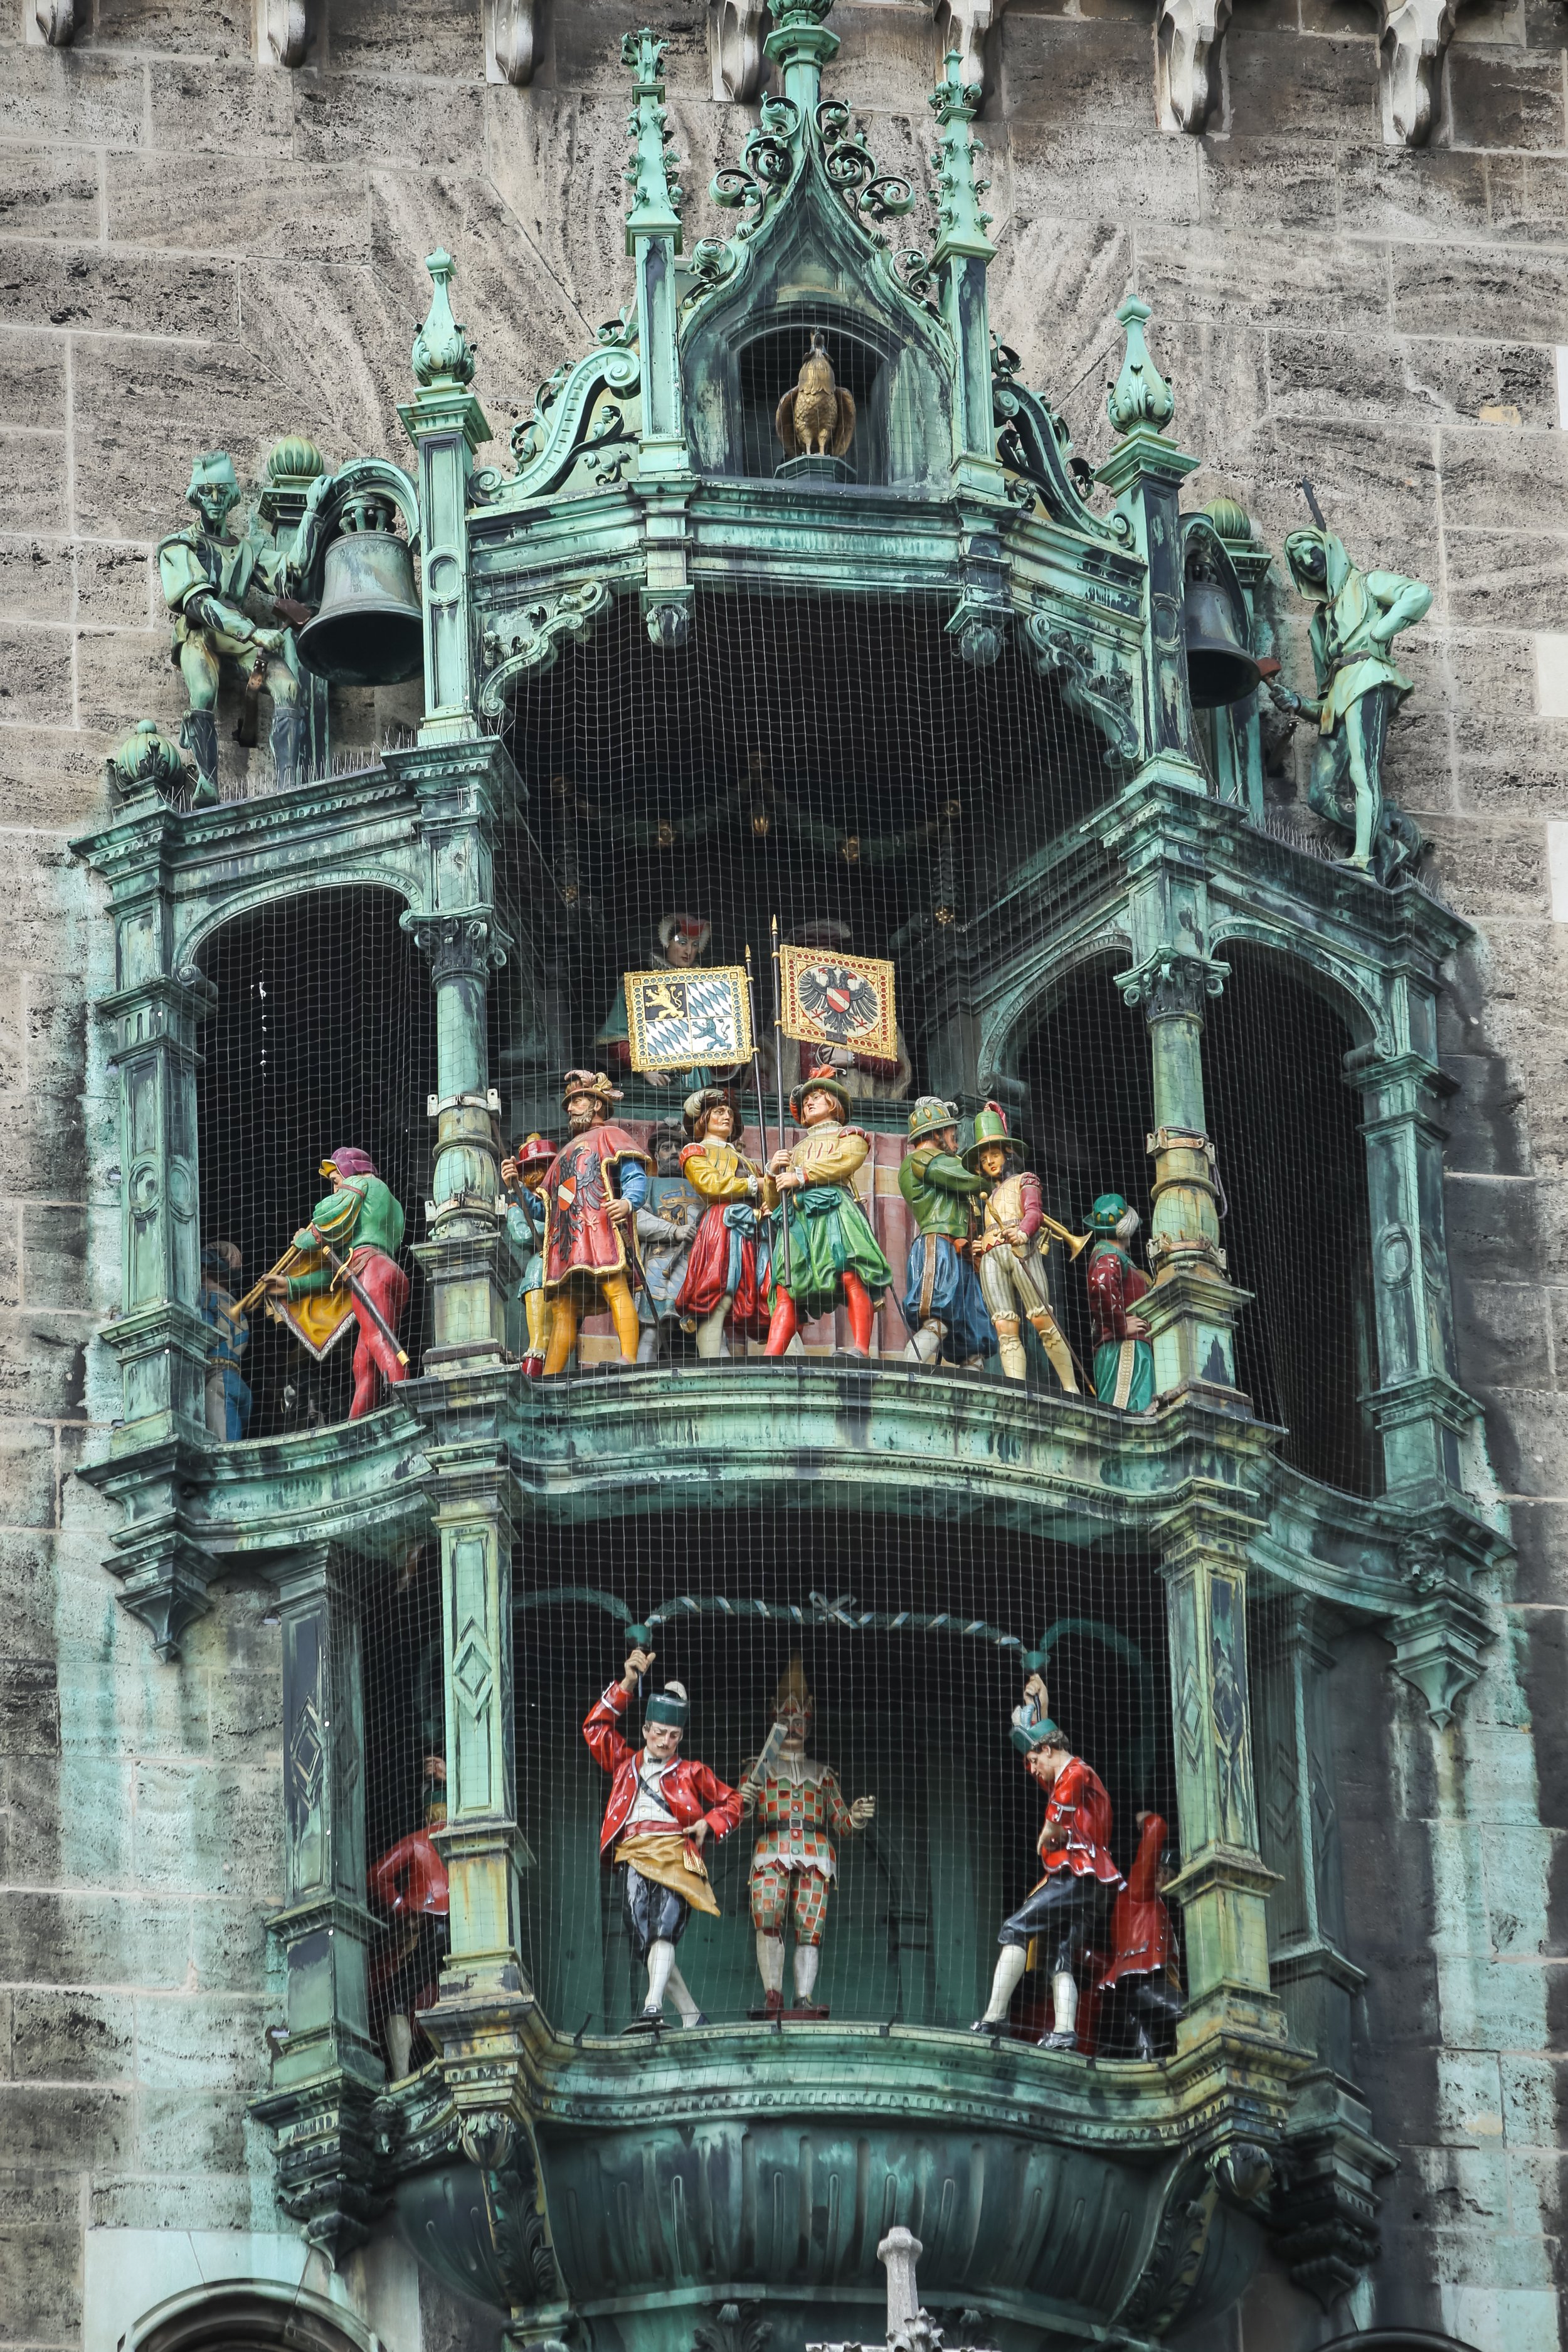 Rathaus Glockenspiel at Marienplatz